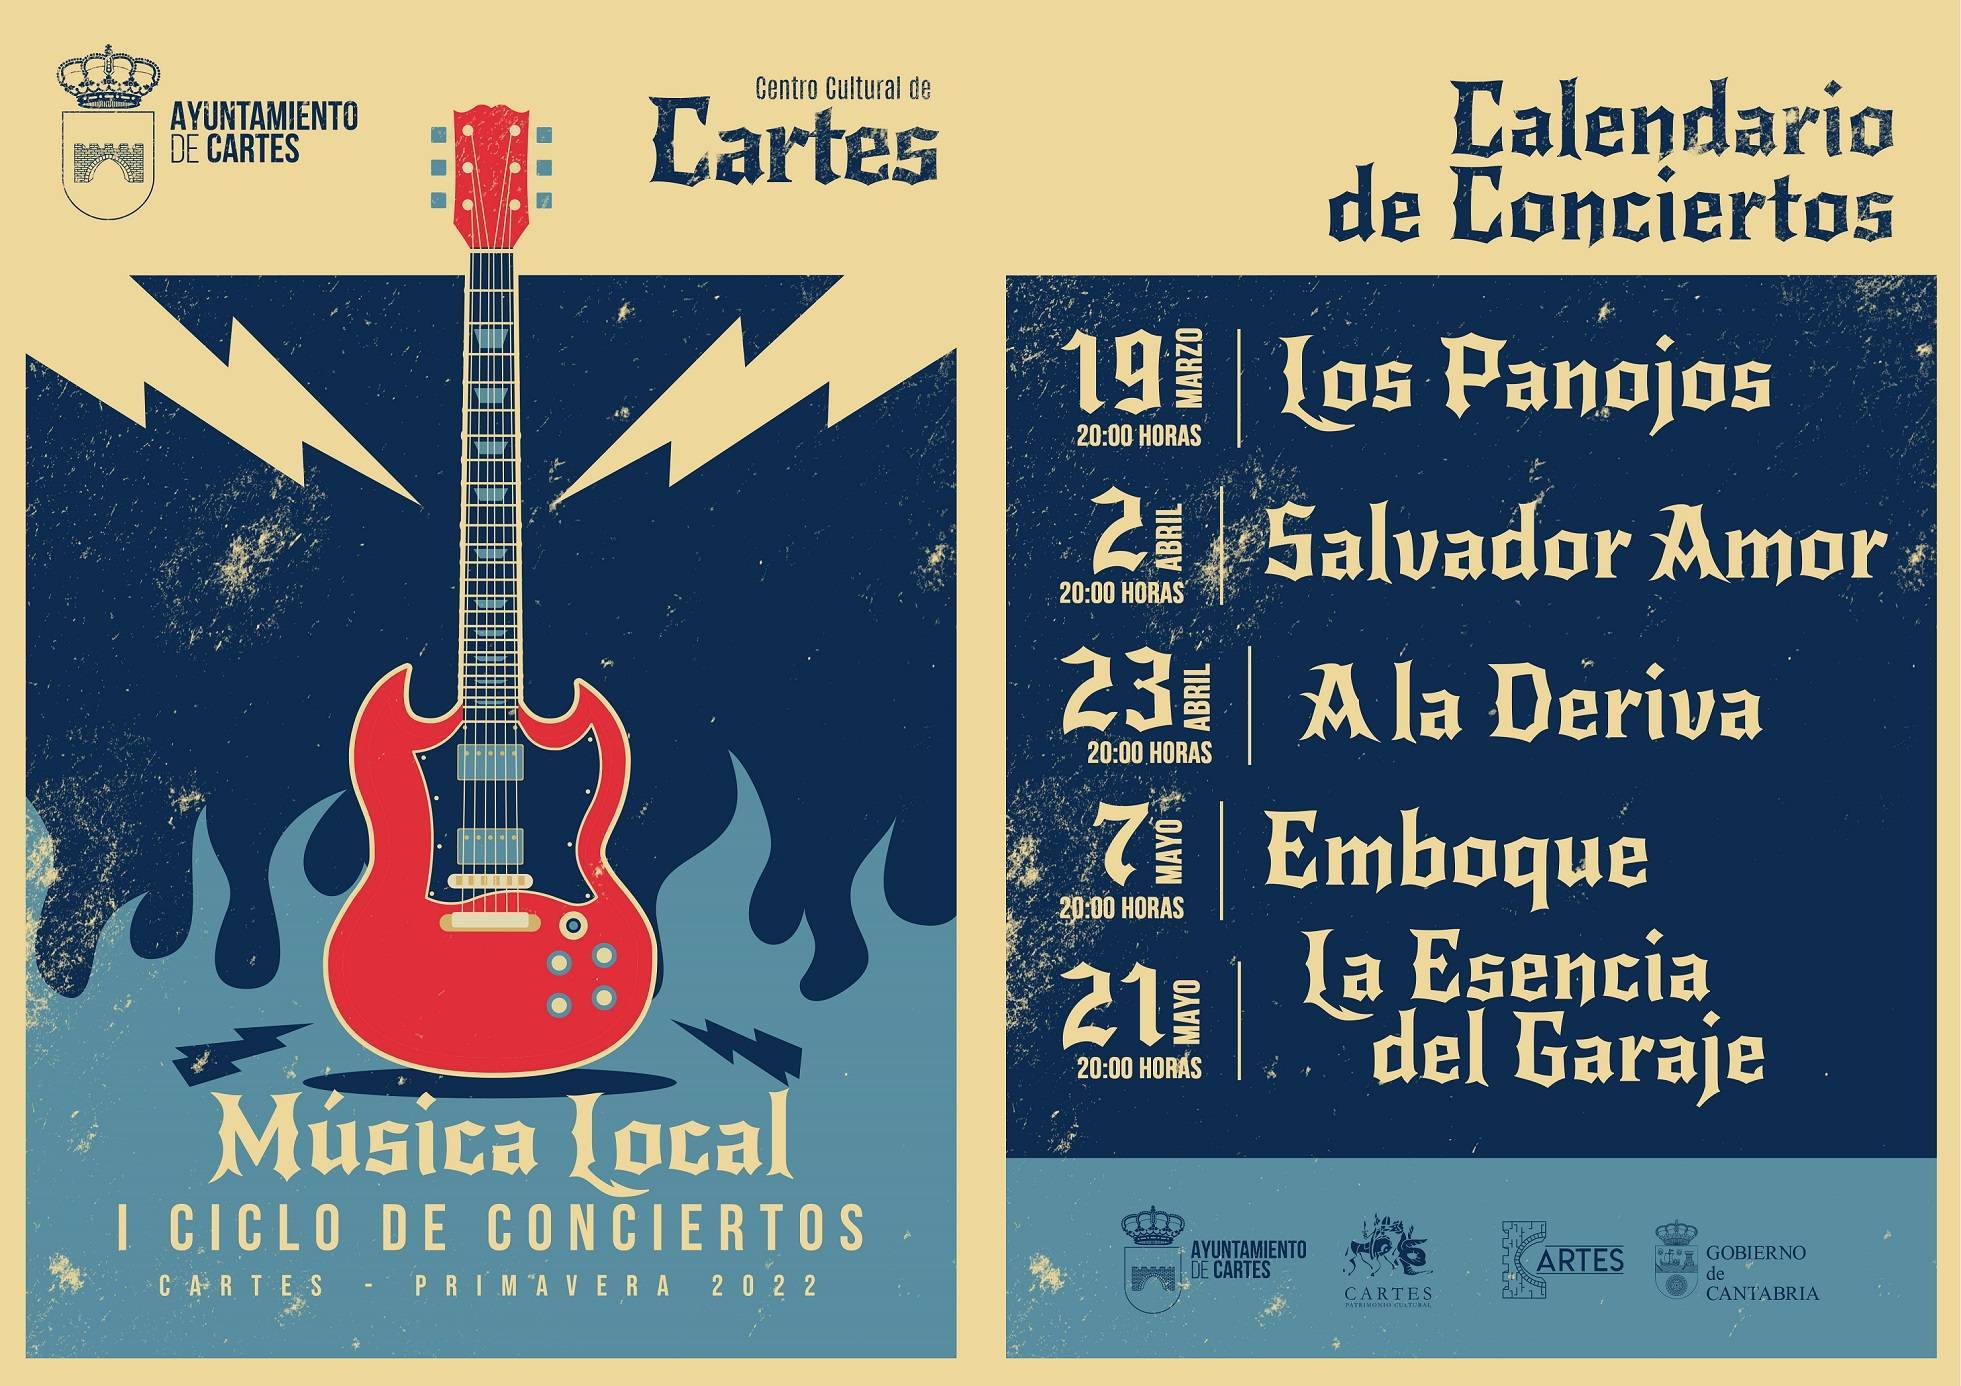 I Ciclo de Conciertos de Música Local - Cartes (Cantabria)